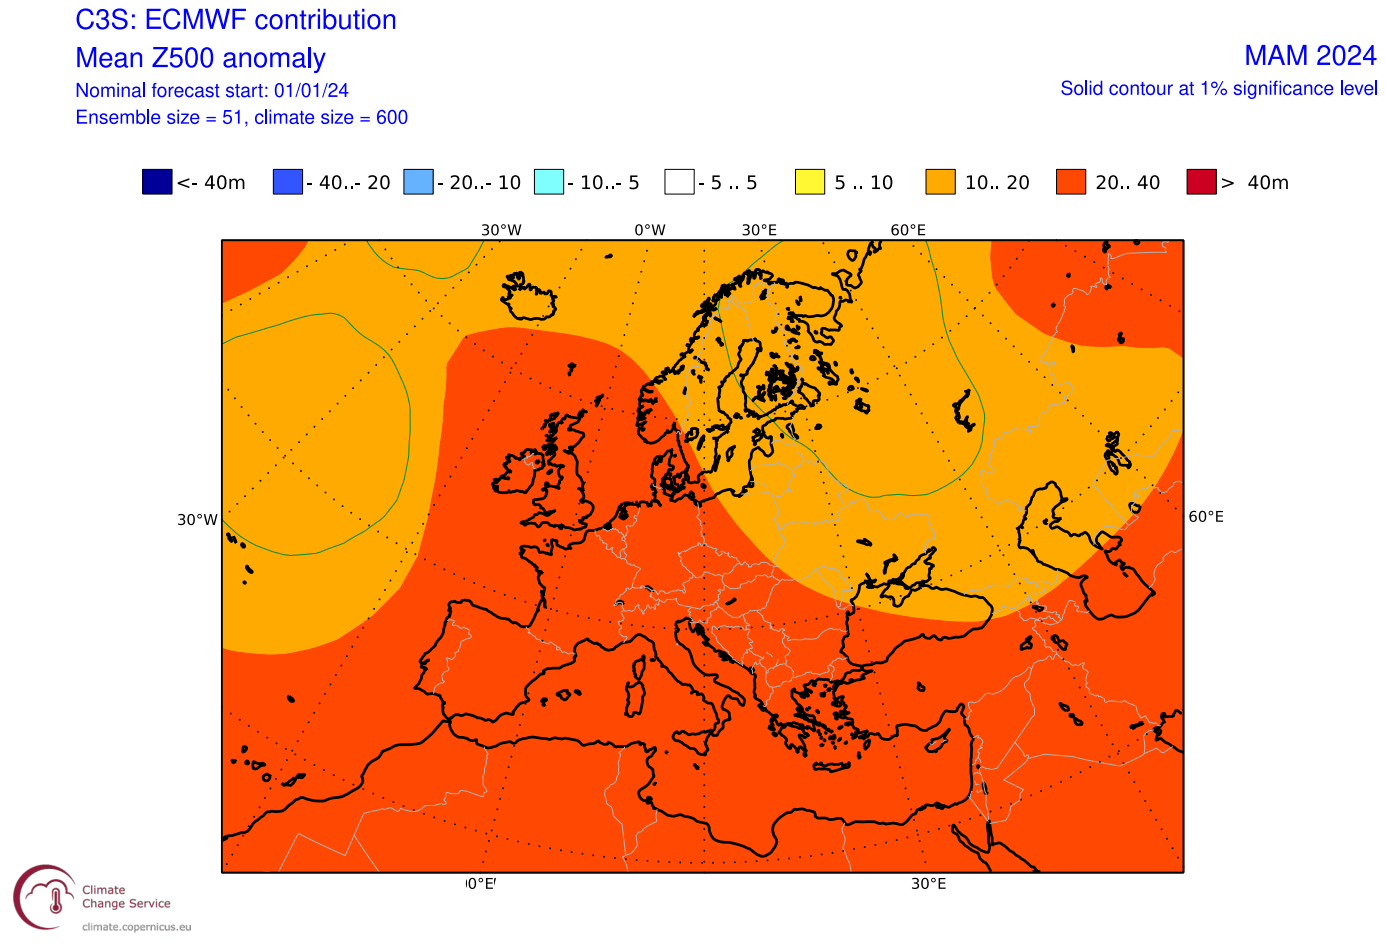 spring-season-2024-weather-forecast-ecmwf-pressure-anomaly-europe-long-range